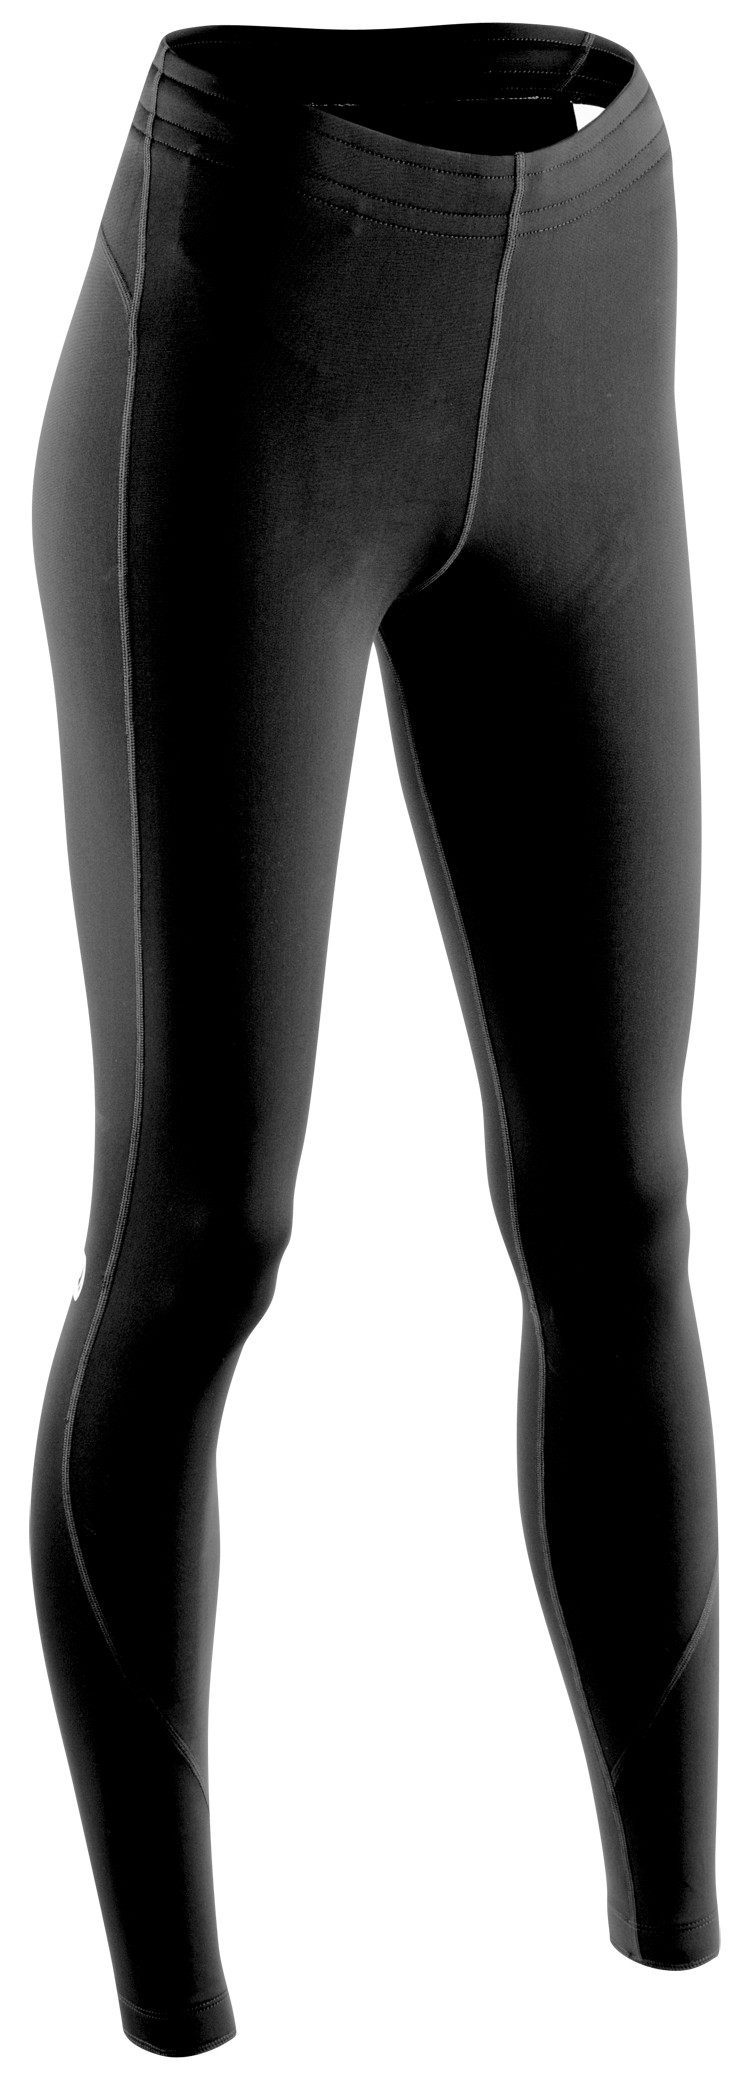 Рейтузи Sugoi Linear MIDZERO TIGHT, жіночі, gunmetal/black (сіро-чорні), M фото 